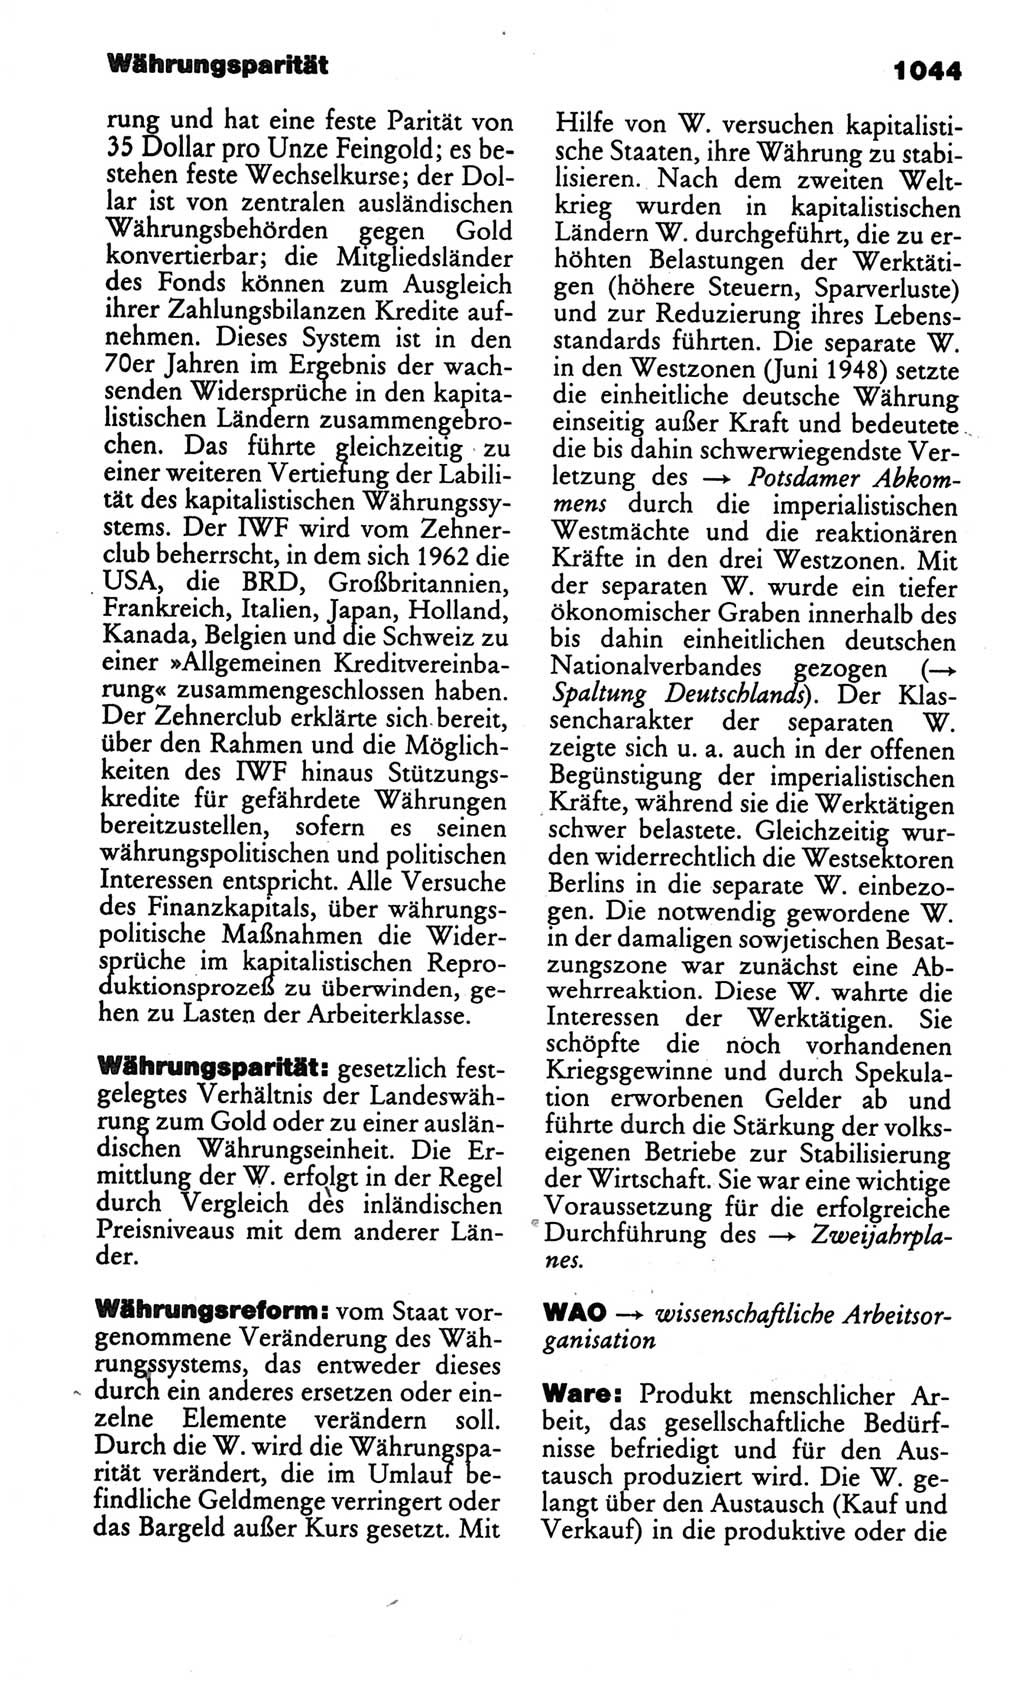 Kleines politisches Wörterbuch [Deutsche Demokratische Republik (DDR)] 1986, Seite 1044 (Kl. pol. Wb. DDR 1986, S. 1044)